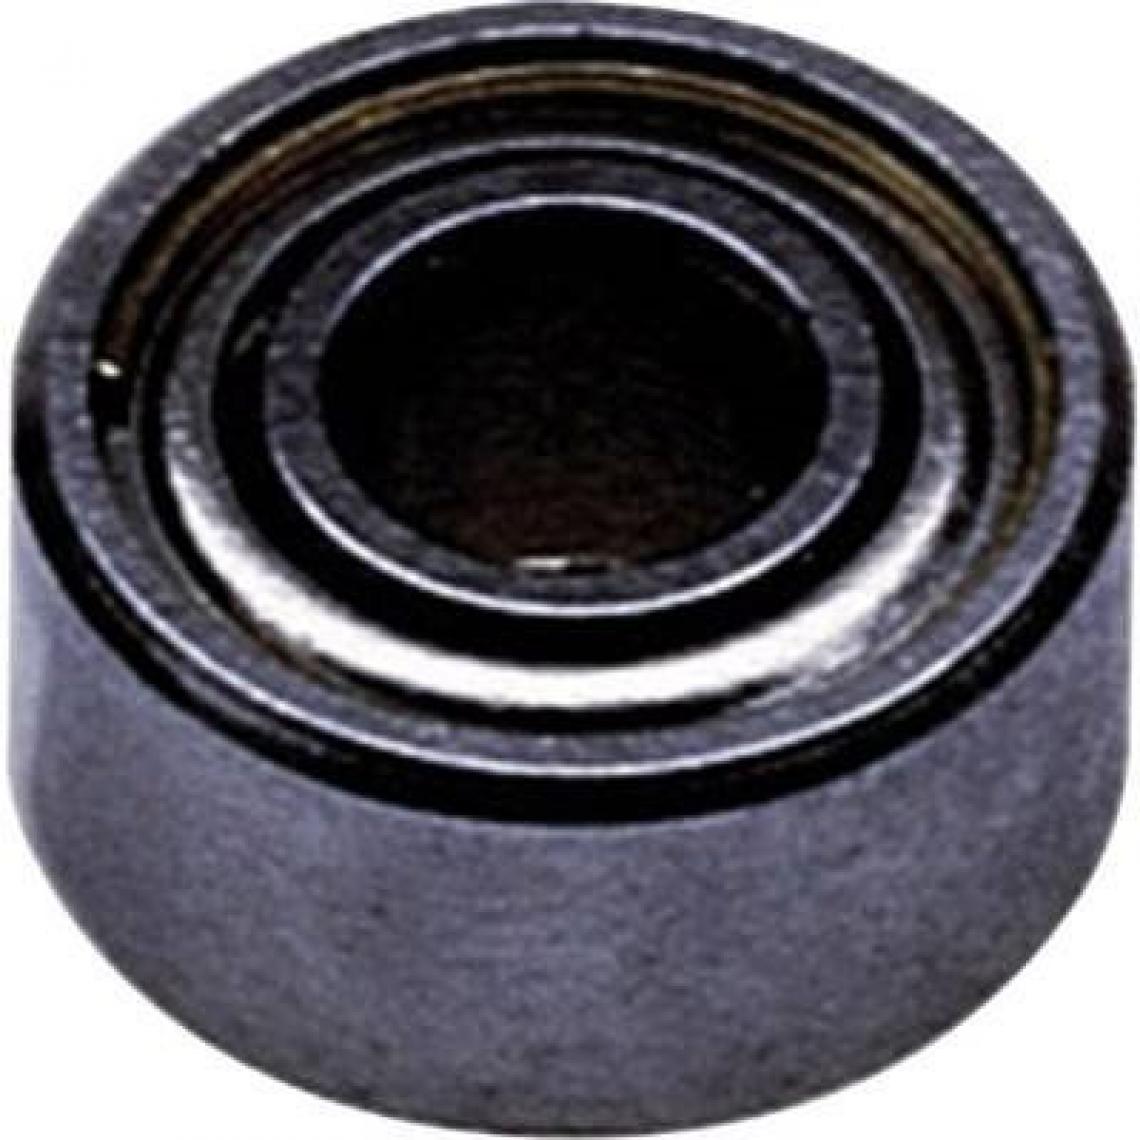 Inconnu - Reely Roulement Radial pour intérieur de diamètreâ€¯: 2 mm extérieur en acier inoxydable Diamètreâ€¯: 6 mm vitesse (Max.)â€¯: 85000 tr/min - Accessoires et pièces